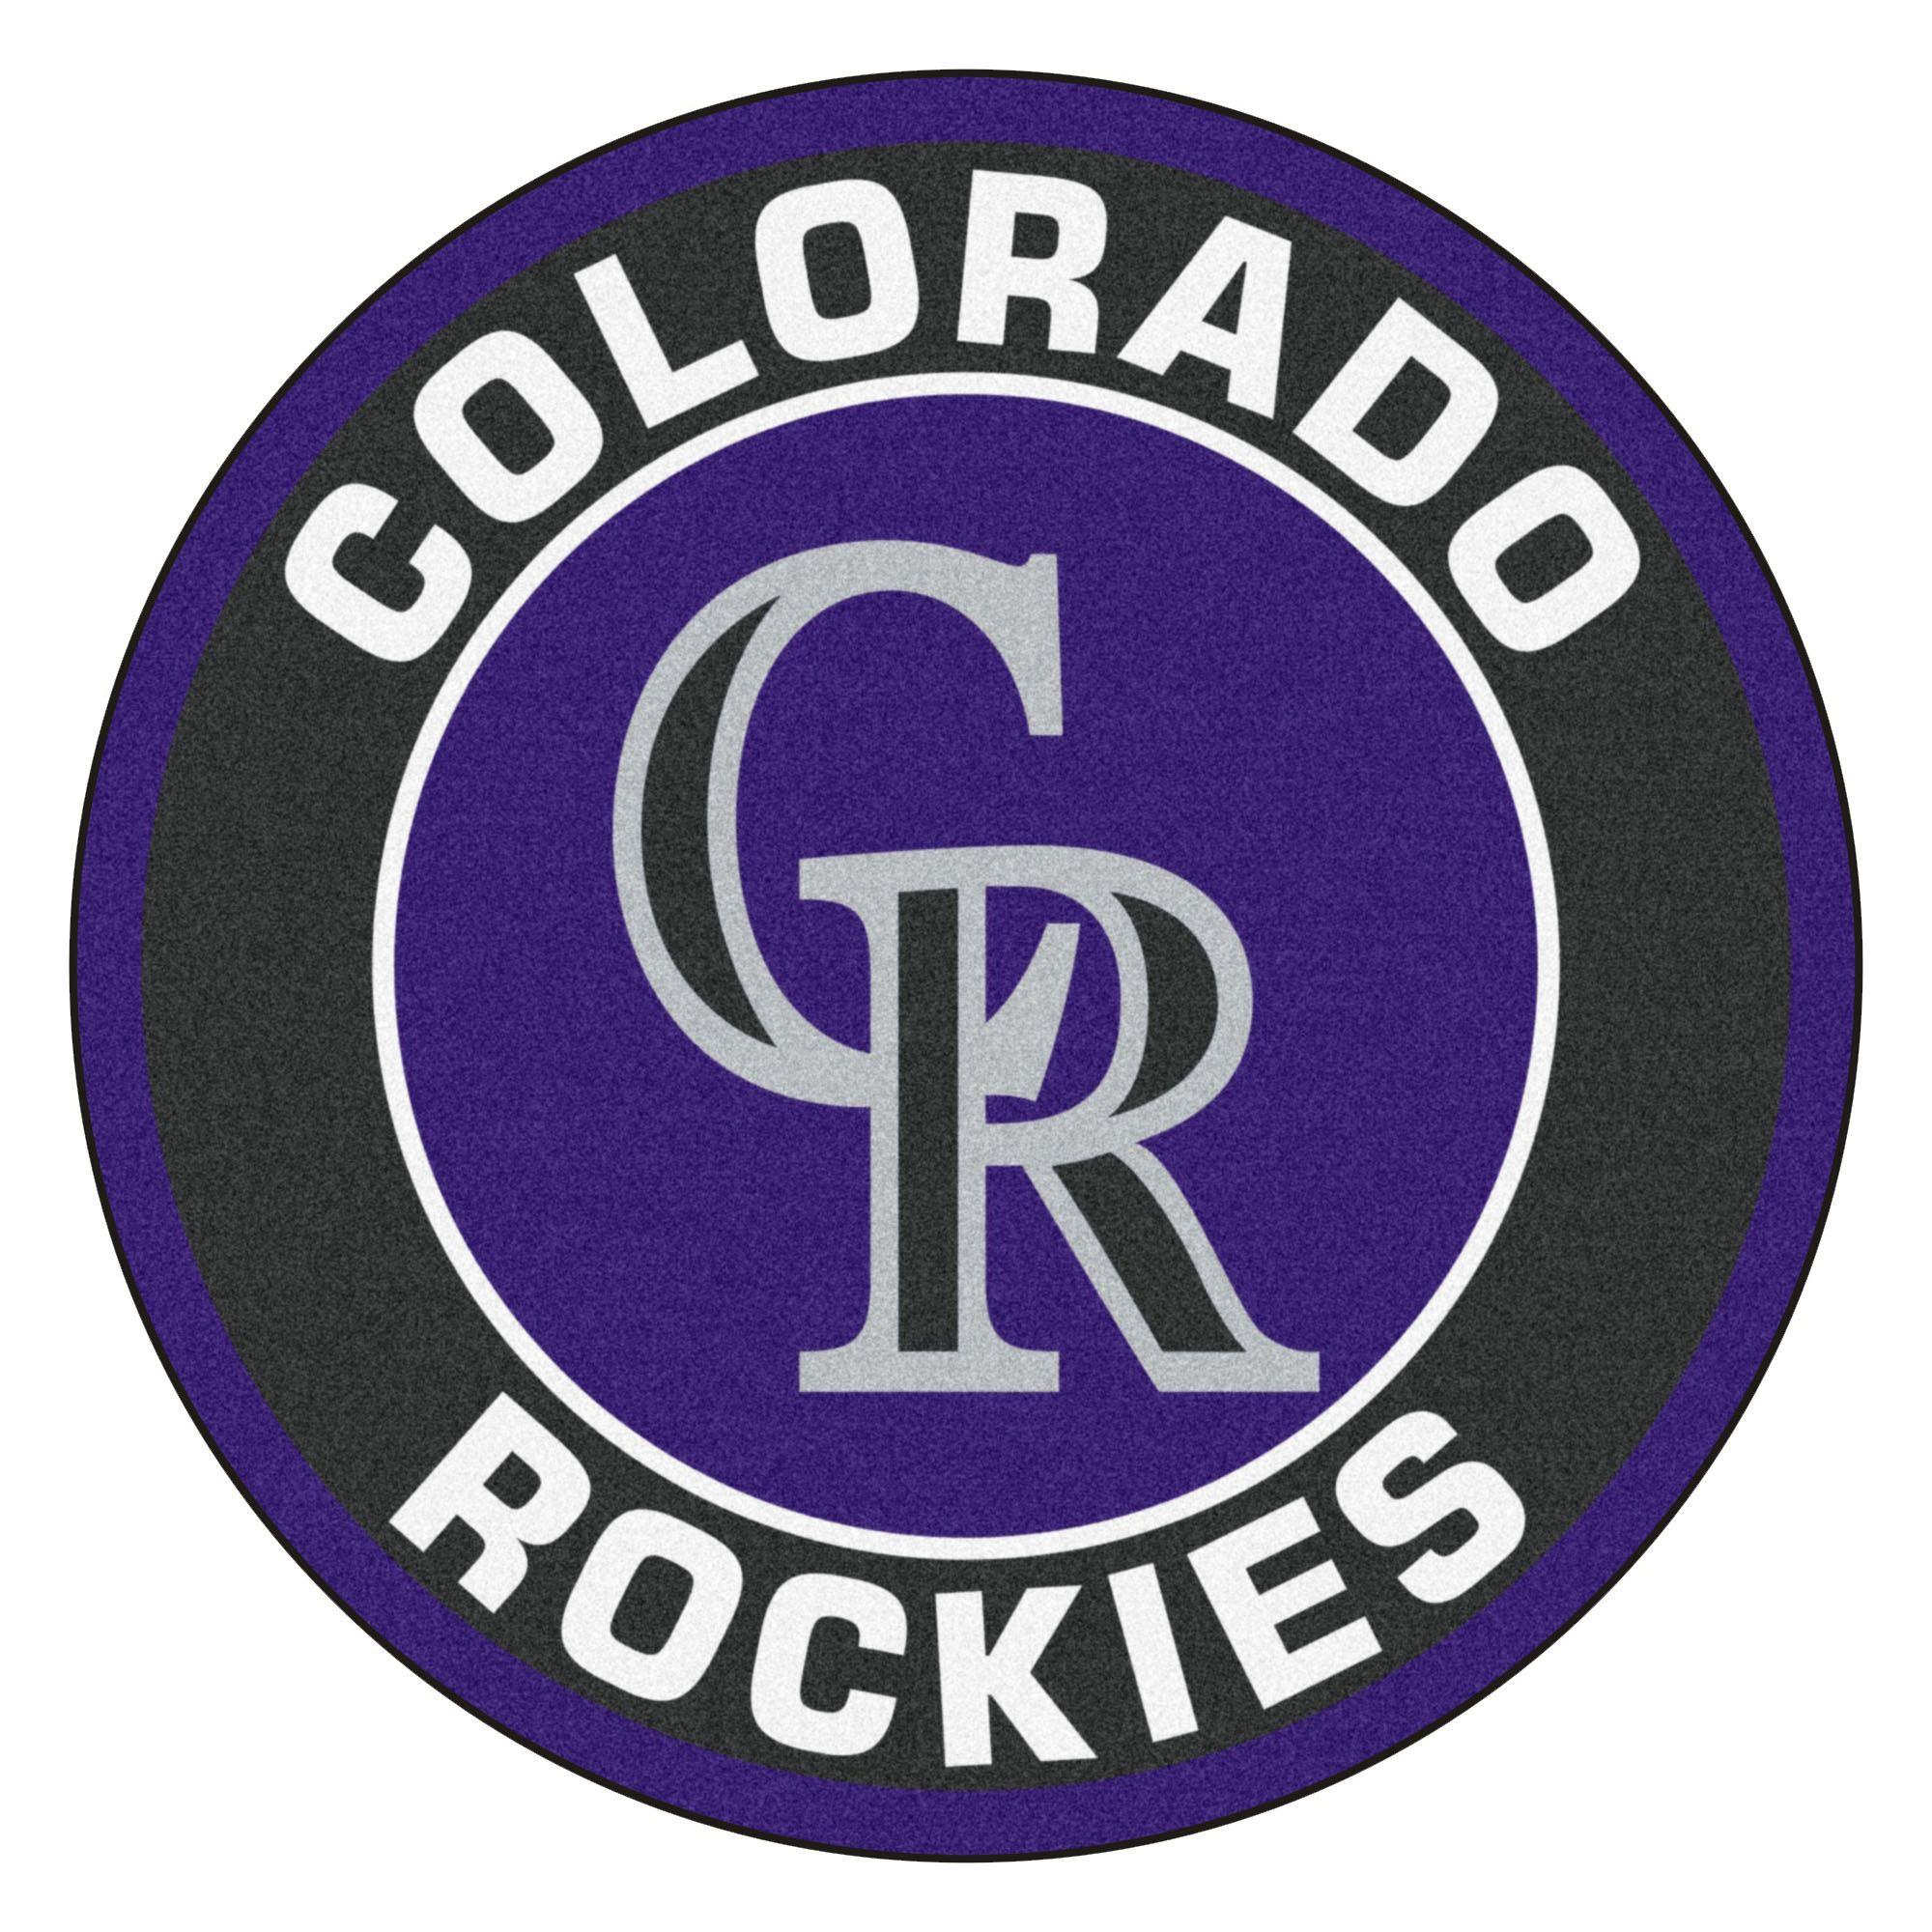 Colorado Rockies Logo - Presale Codes for MLB Opening Day 2018 - Colorado Rockies - Presale ...